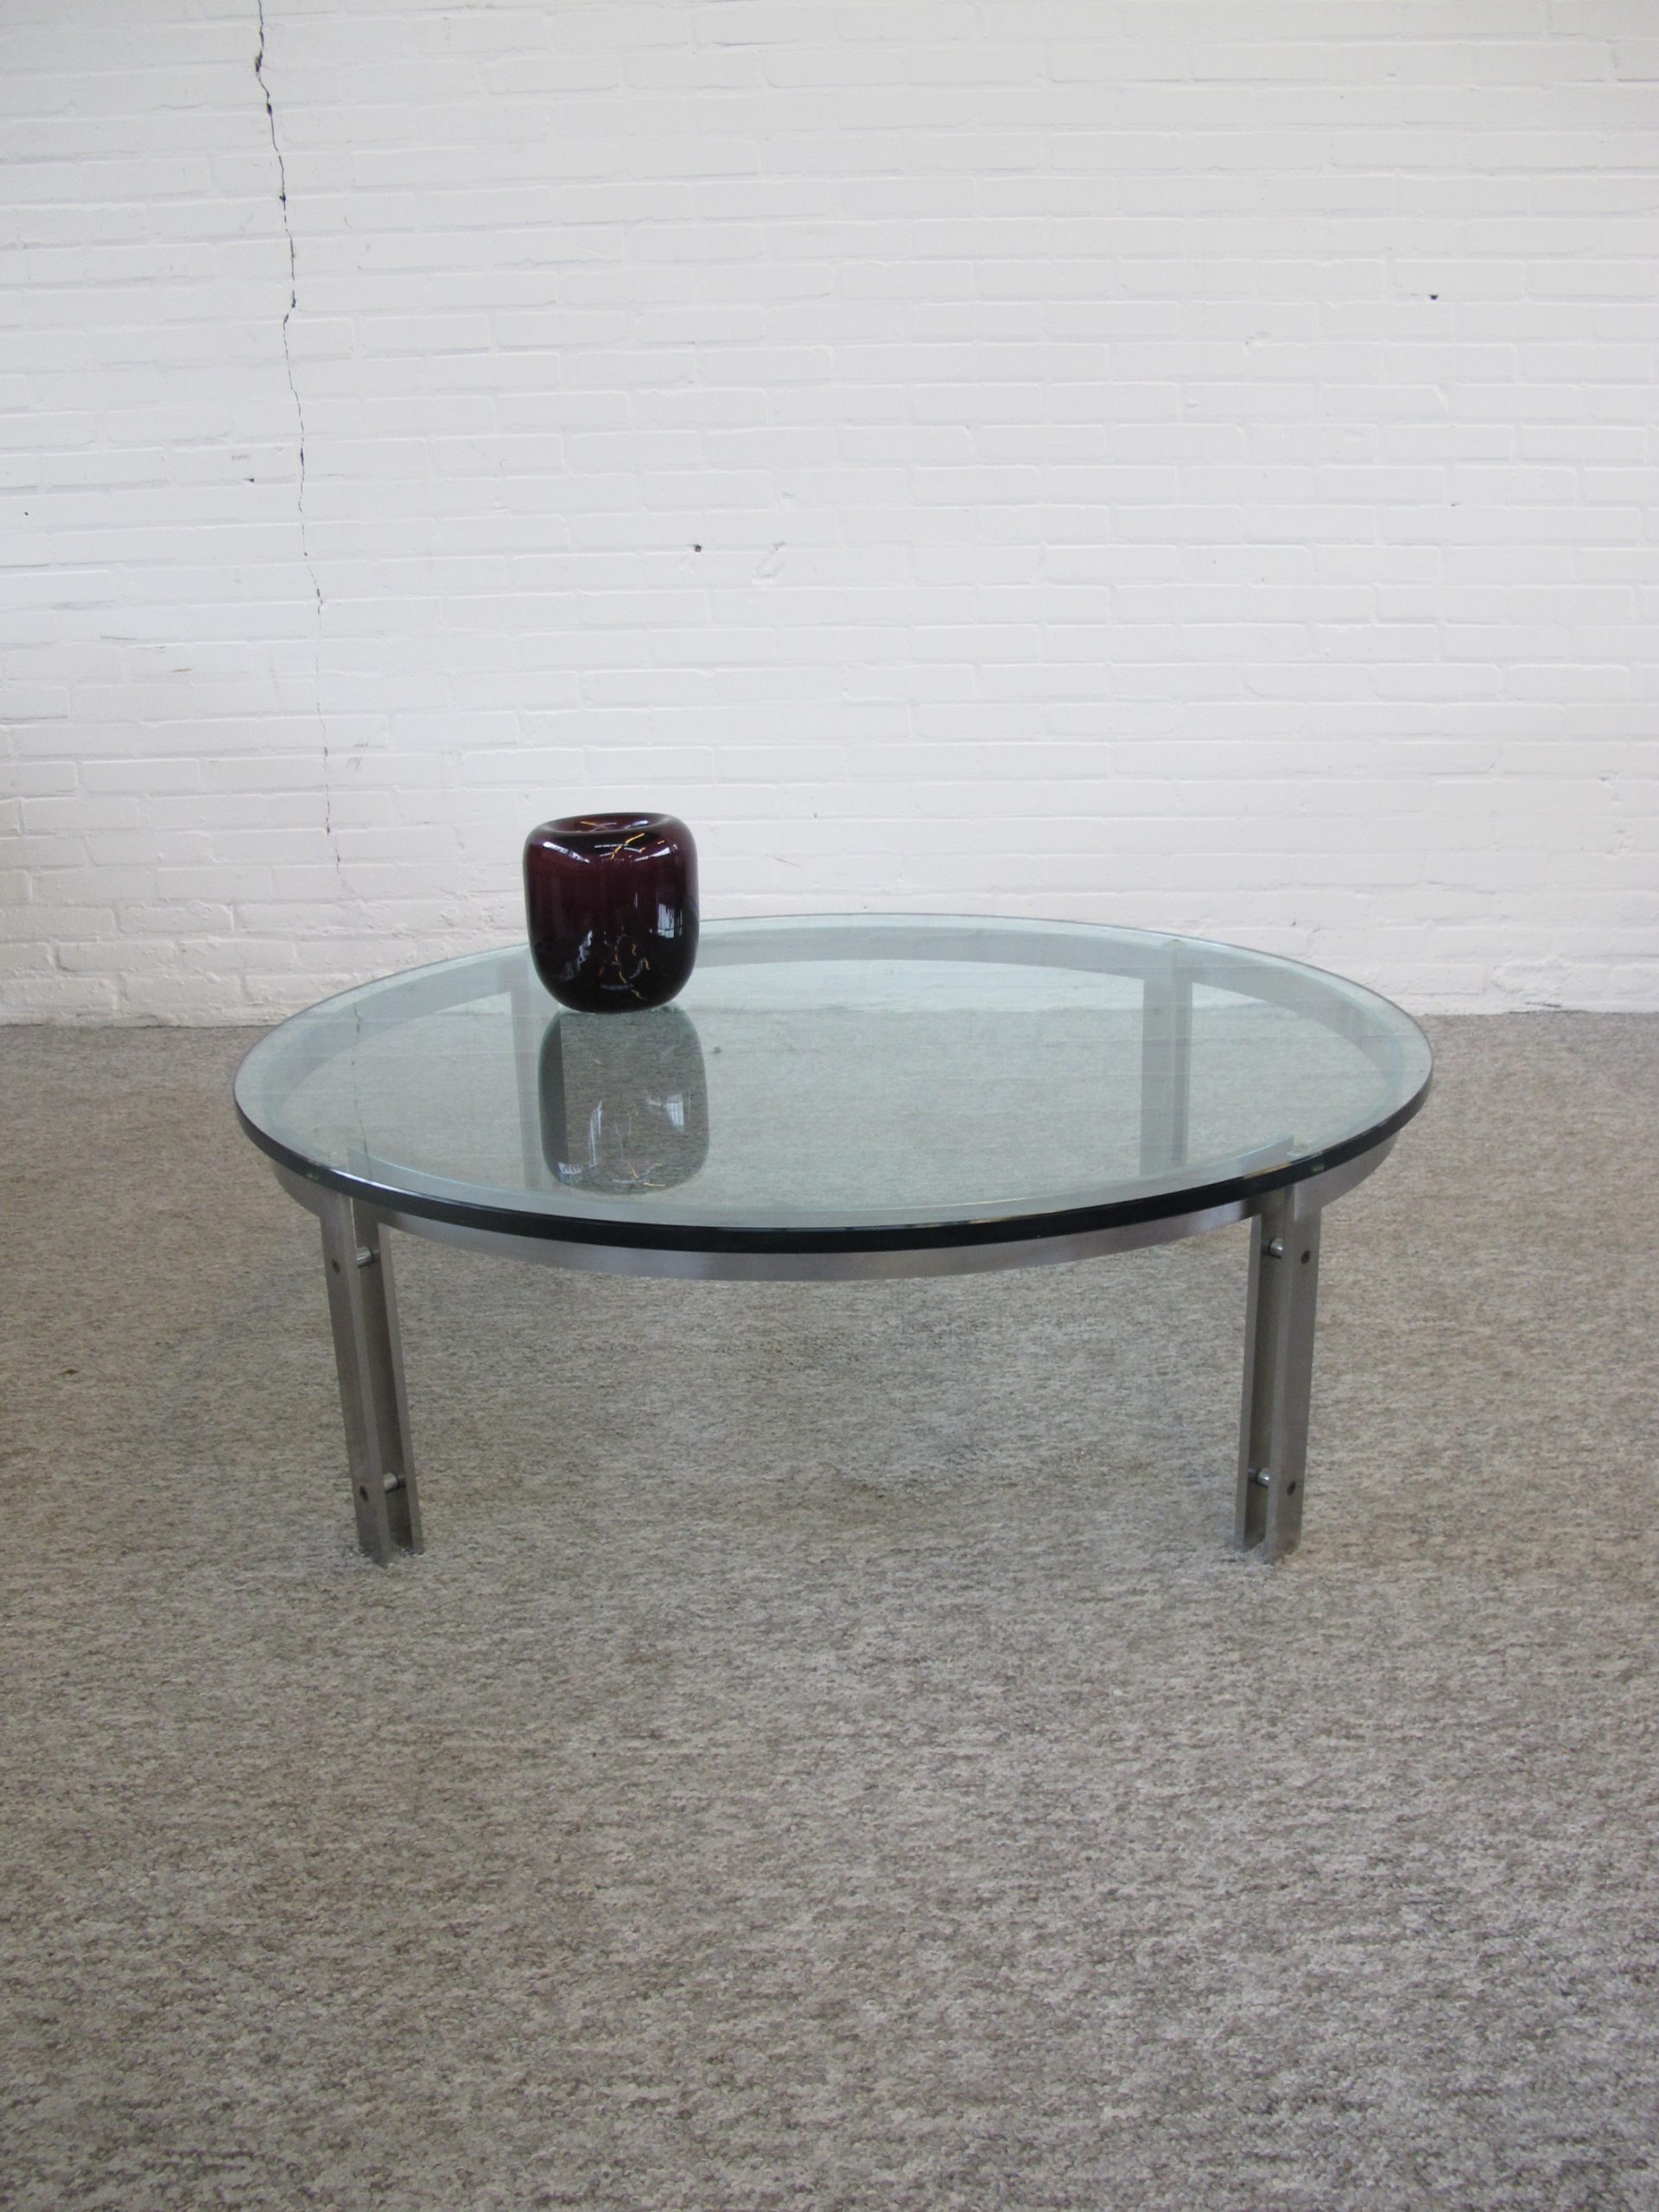 tafel Table Hank Kwint Metaform M 1 coffee table vintage midcentury